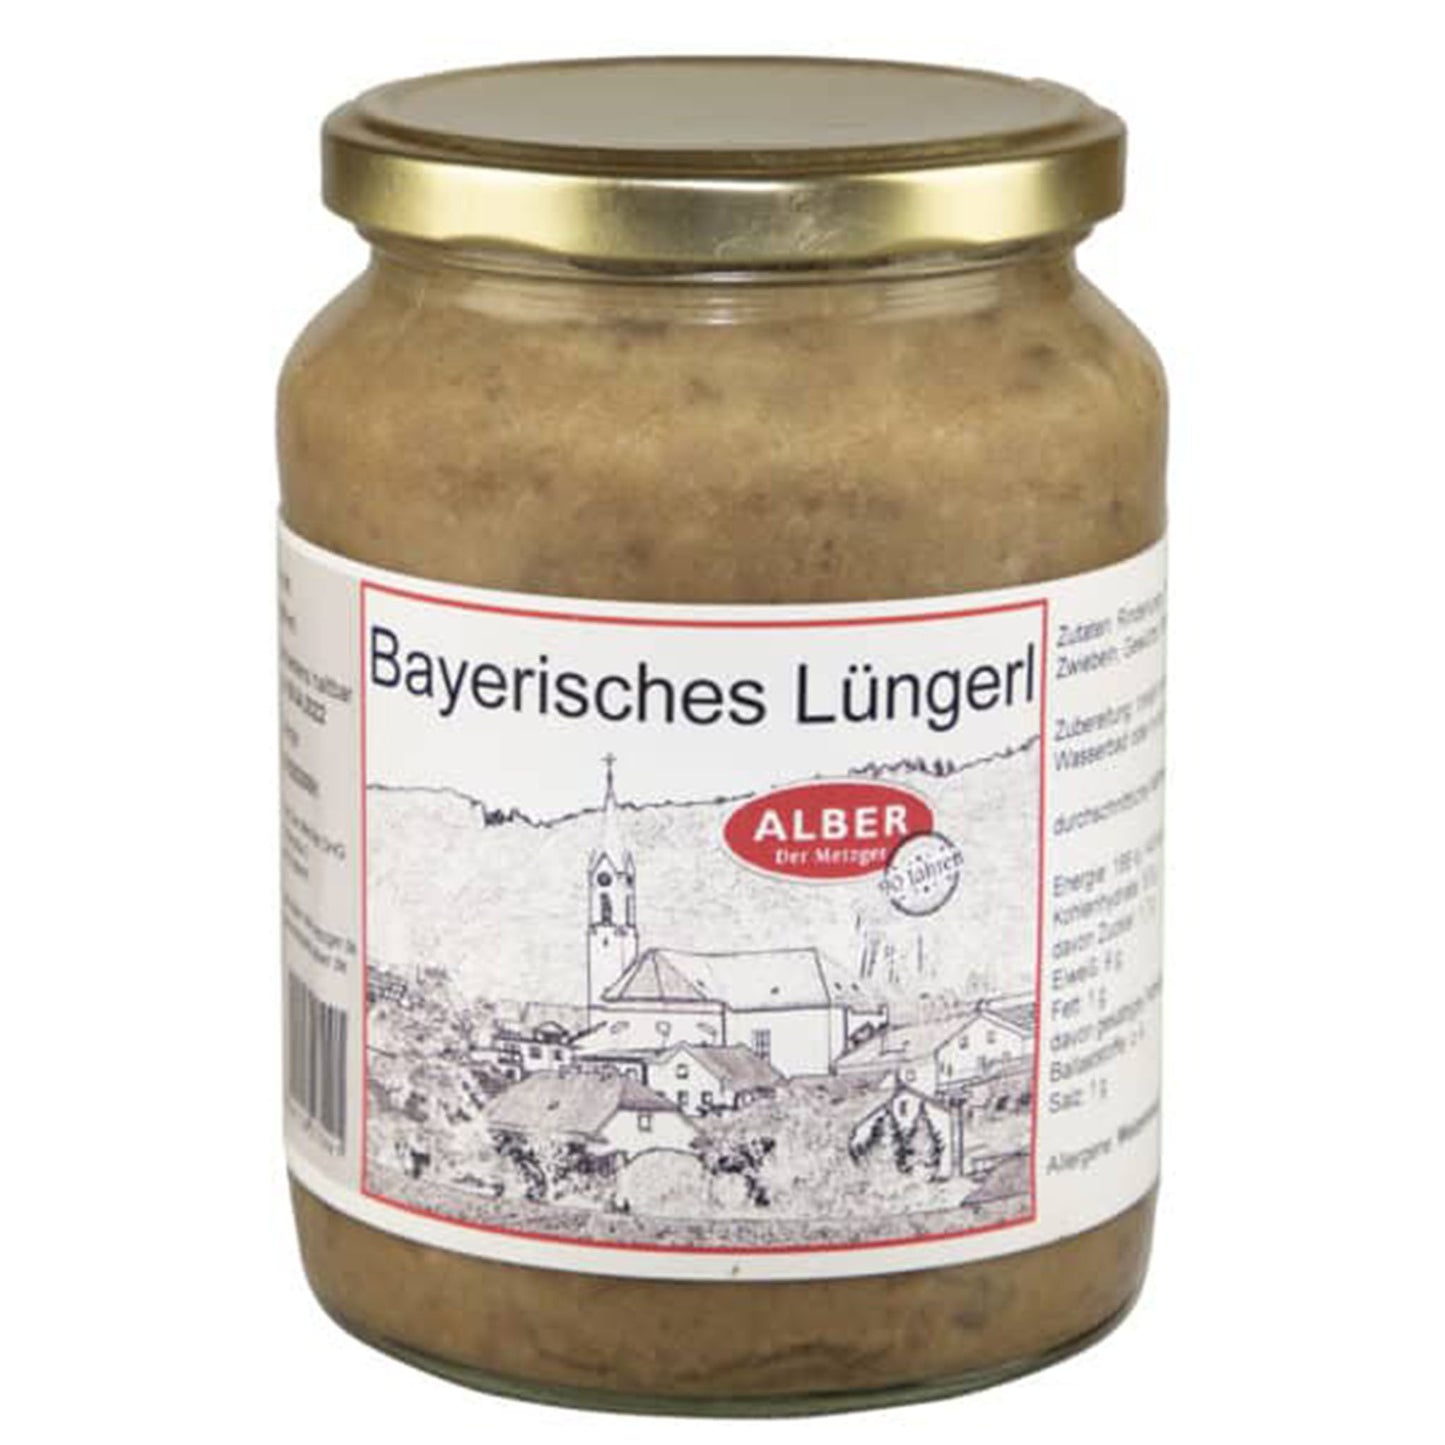 Bayerisches Lüngerl